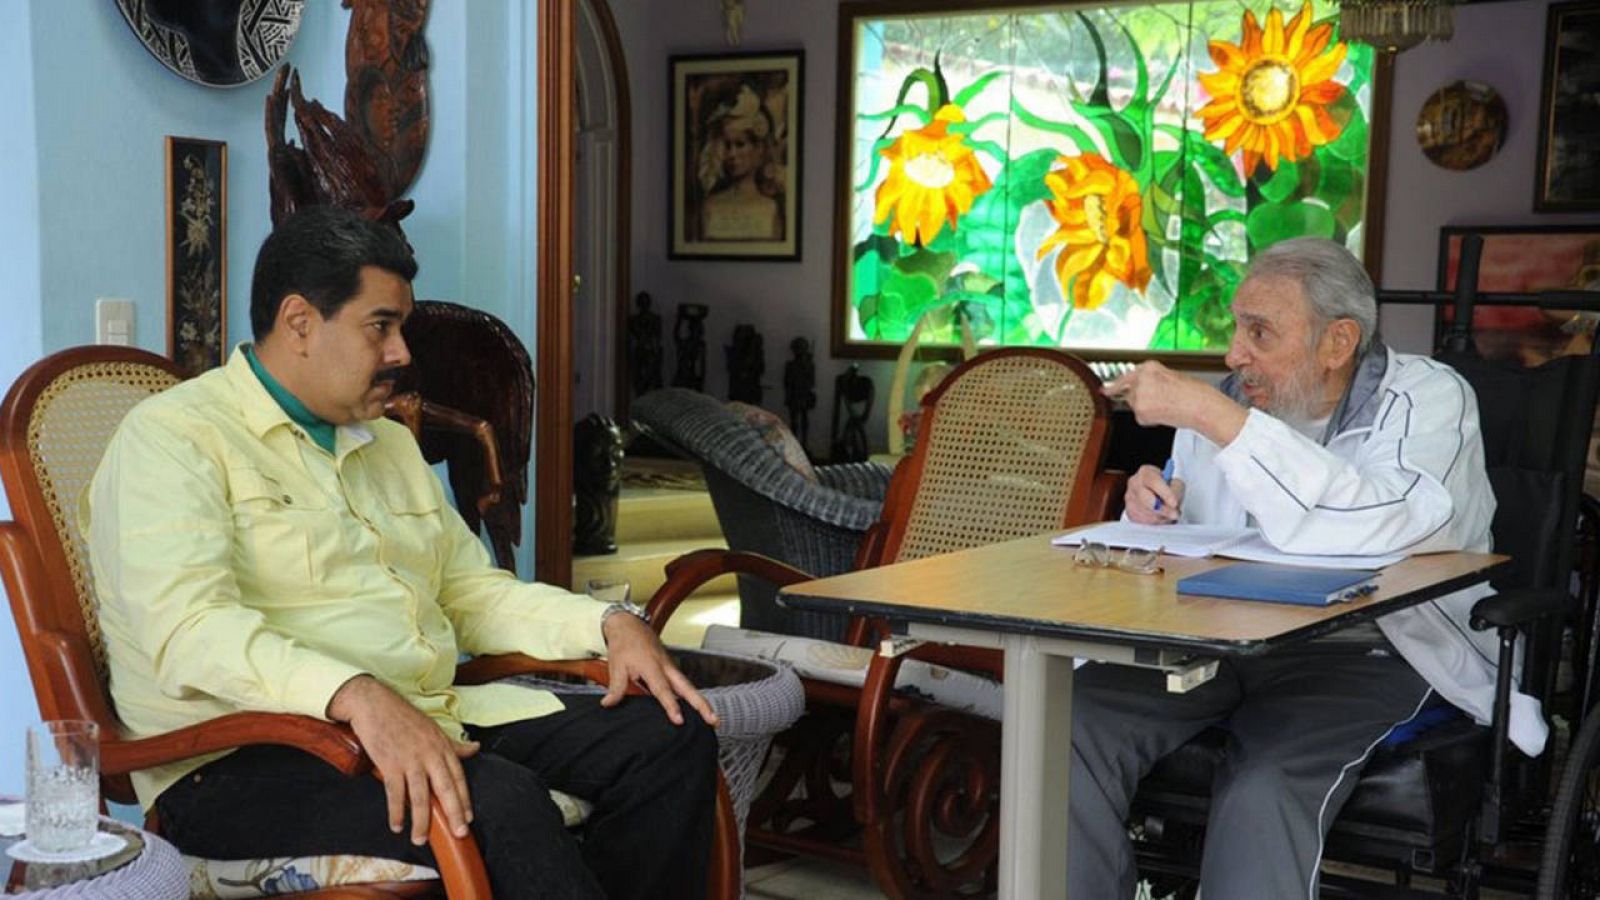 Imagen de la reunión de Fidel Castro y Nicolás maduro este sábado, 19 de marzo, en La Habana.